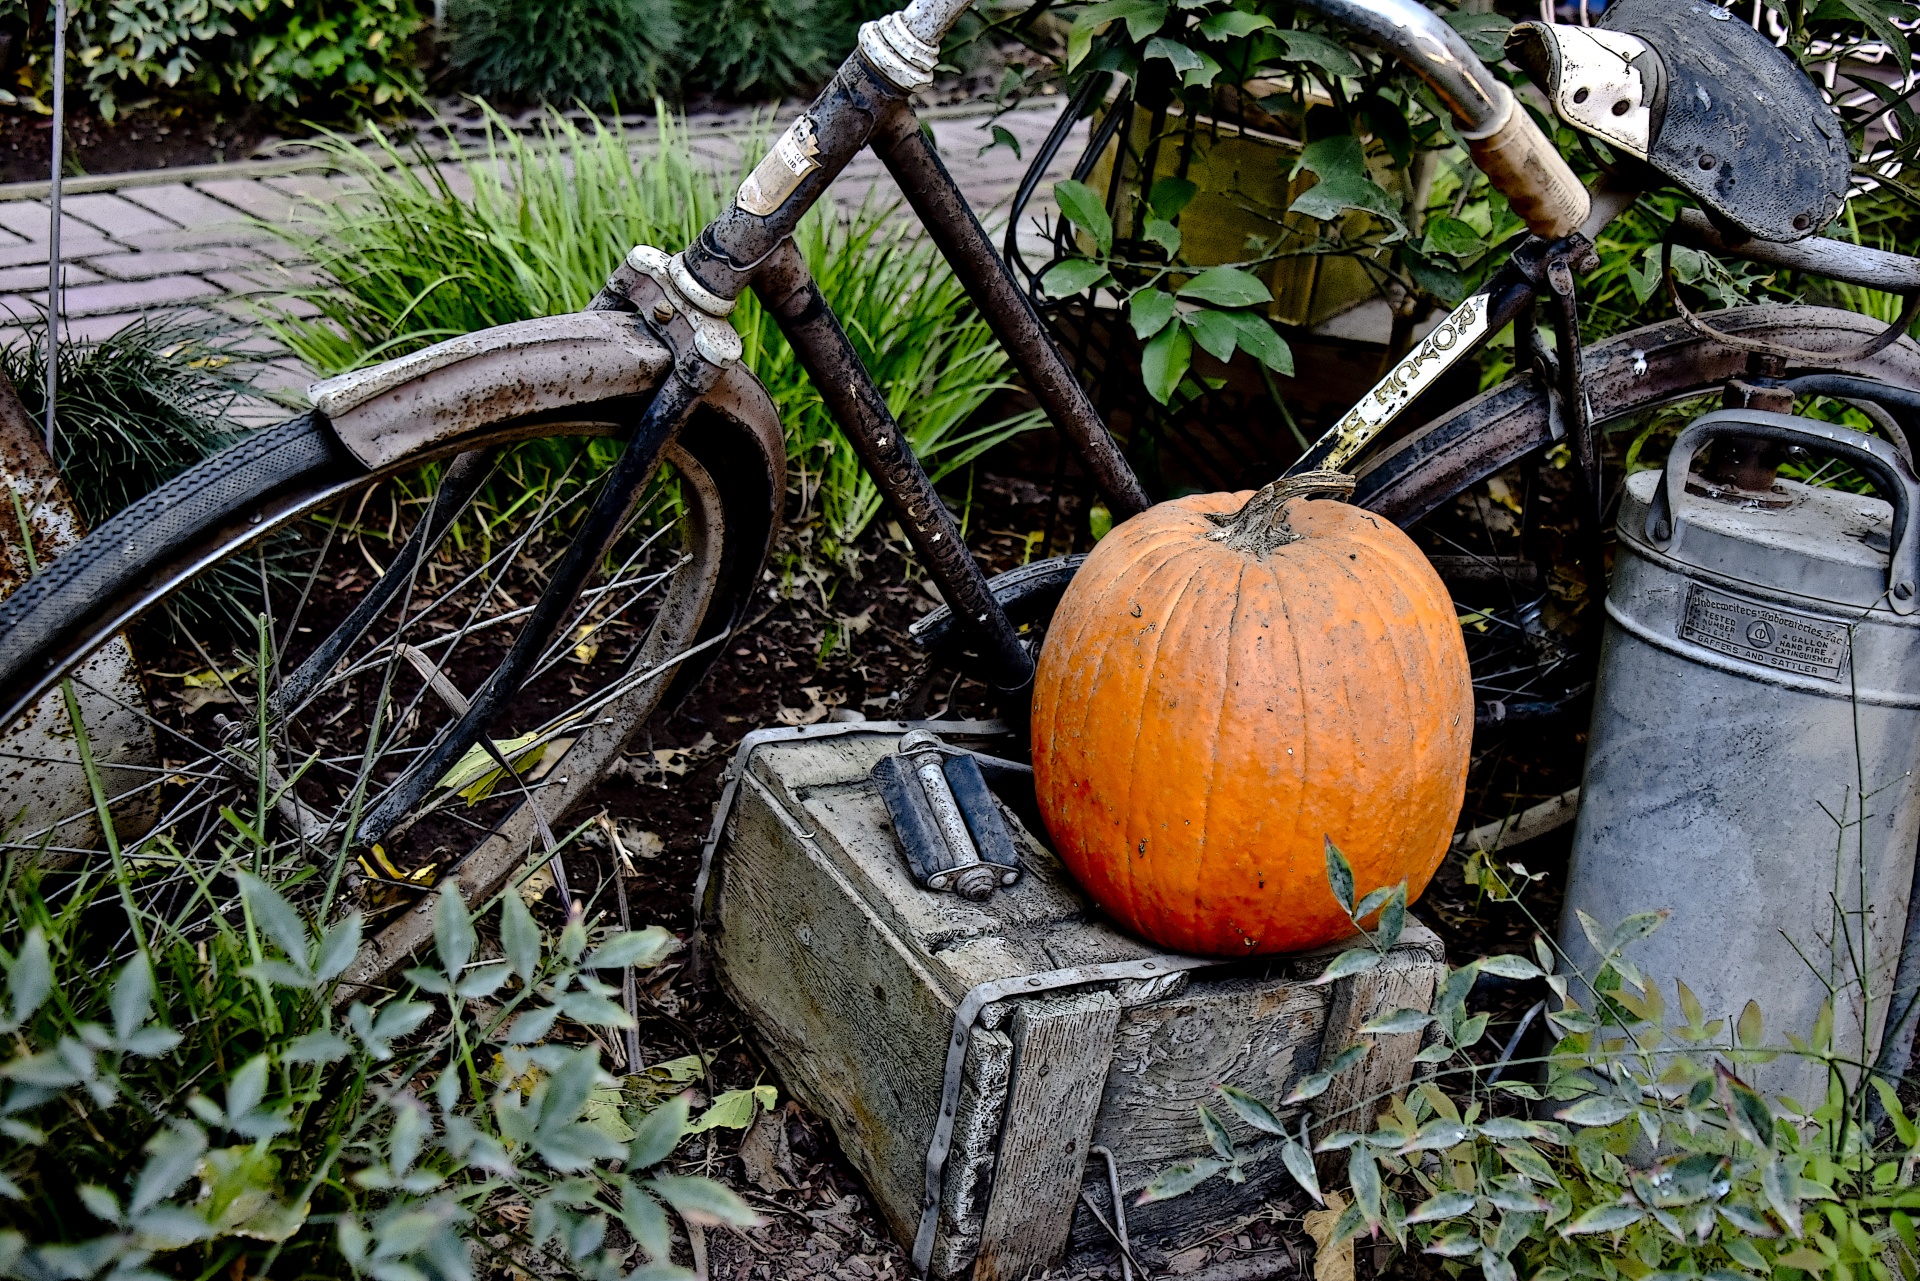 Old Bike And Pumpkin